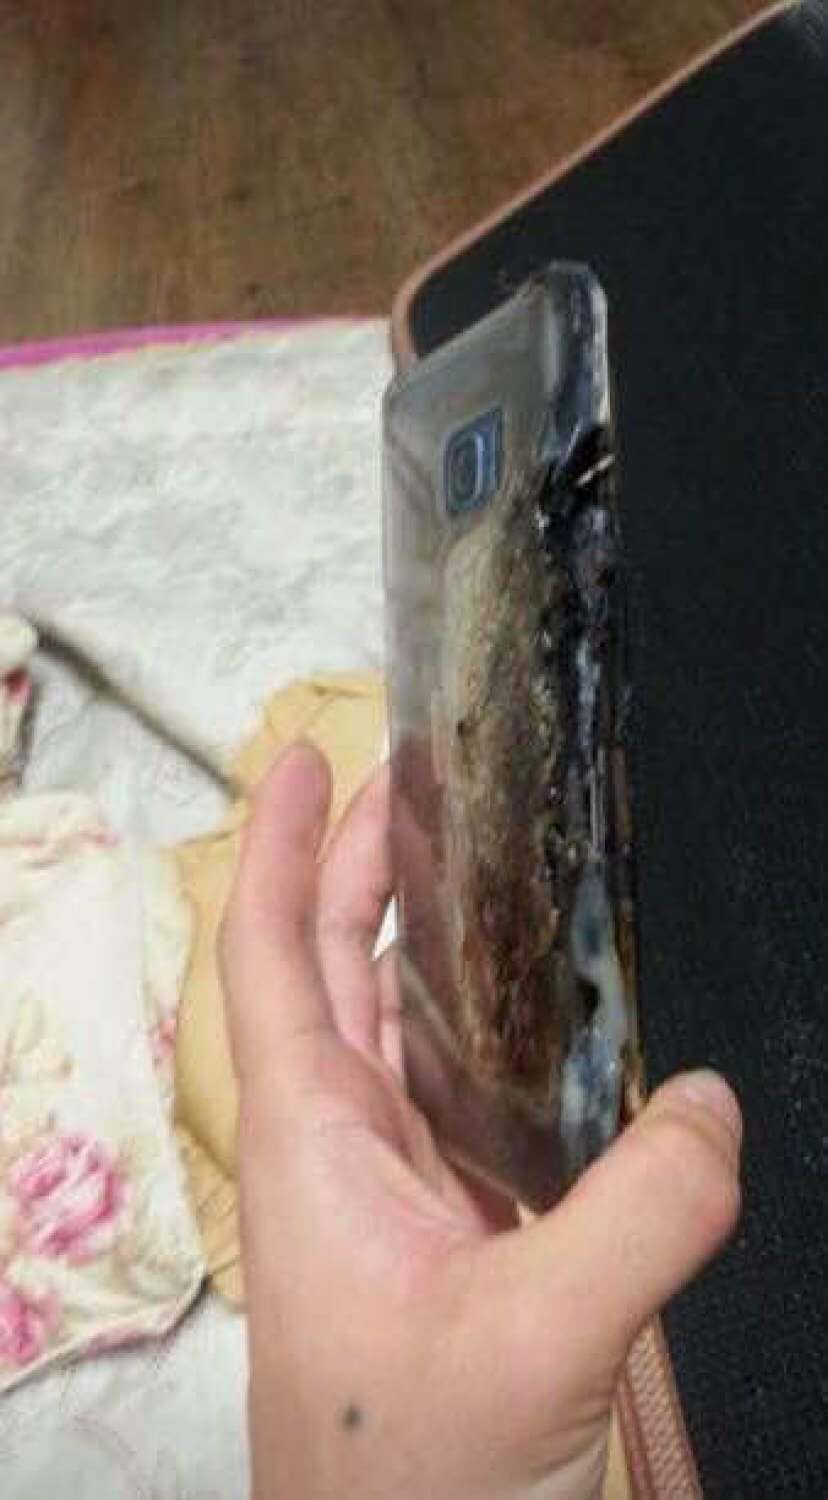 Первый пошёл: Galaxy Note 7 взорвался во время зарядки. Фото.